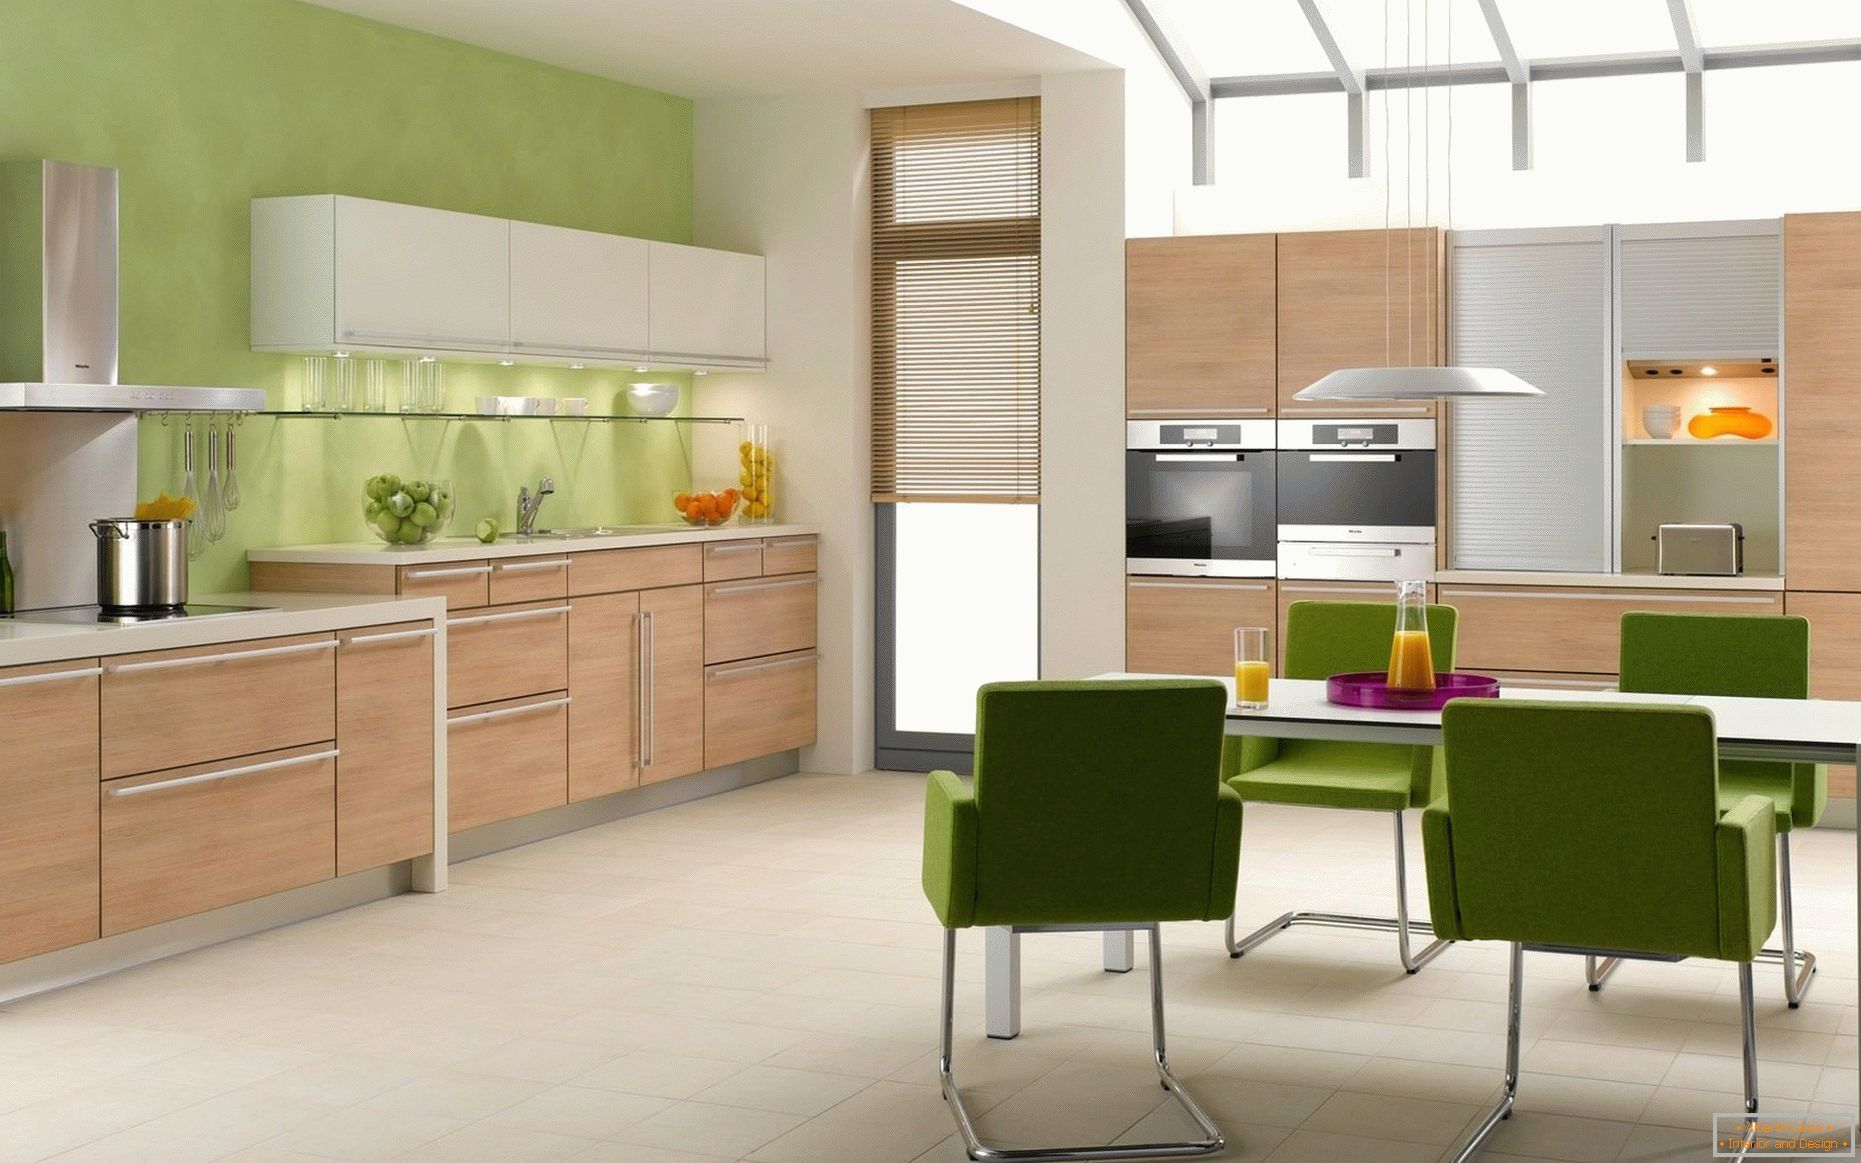 Hölzerne Küche auf einem grünen Hintergrund